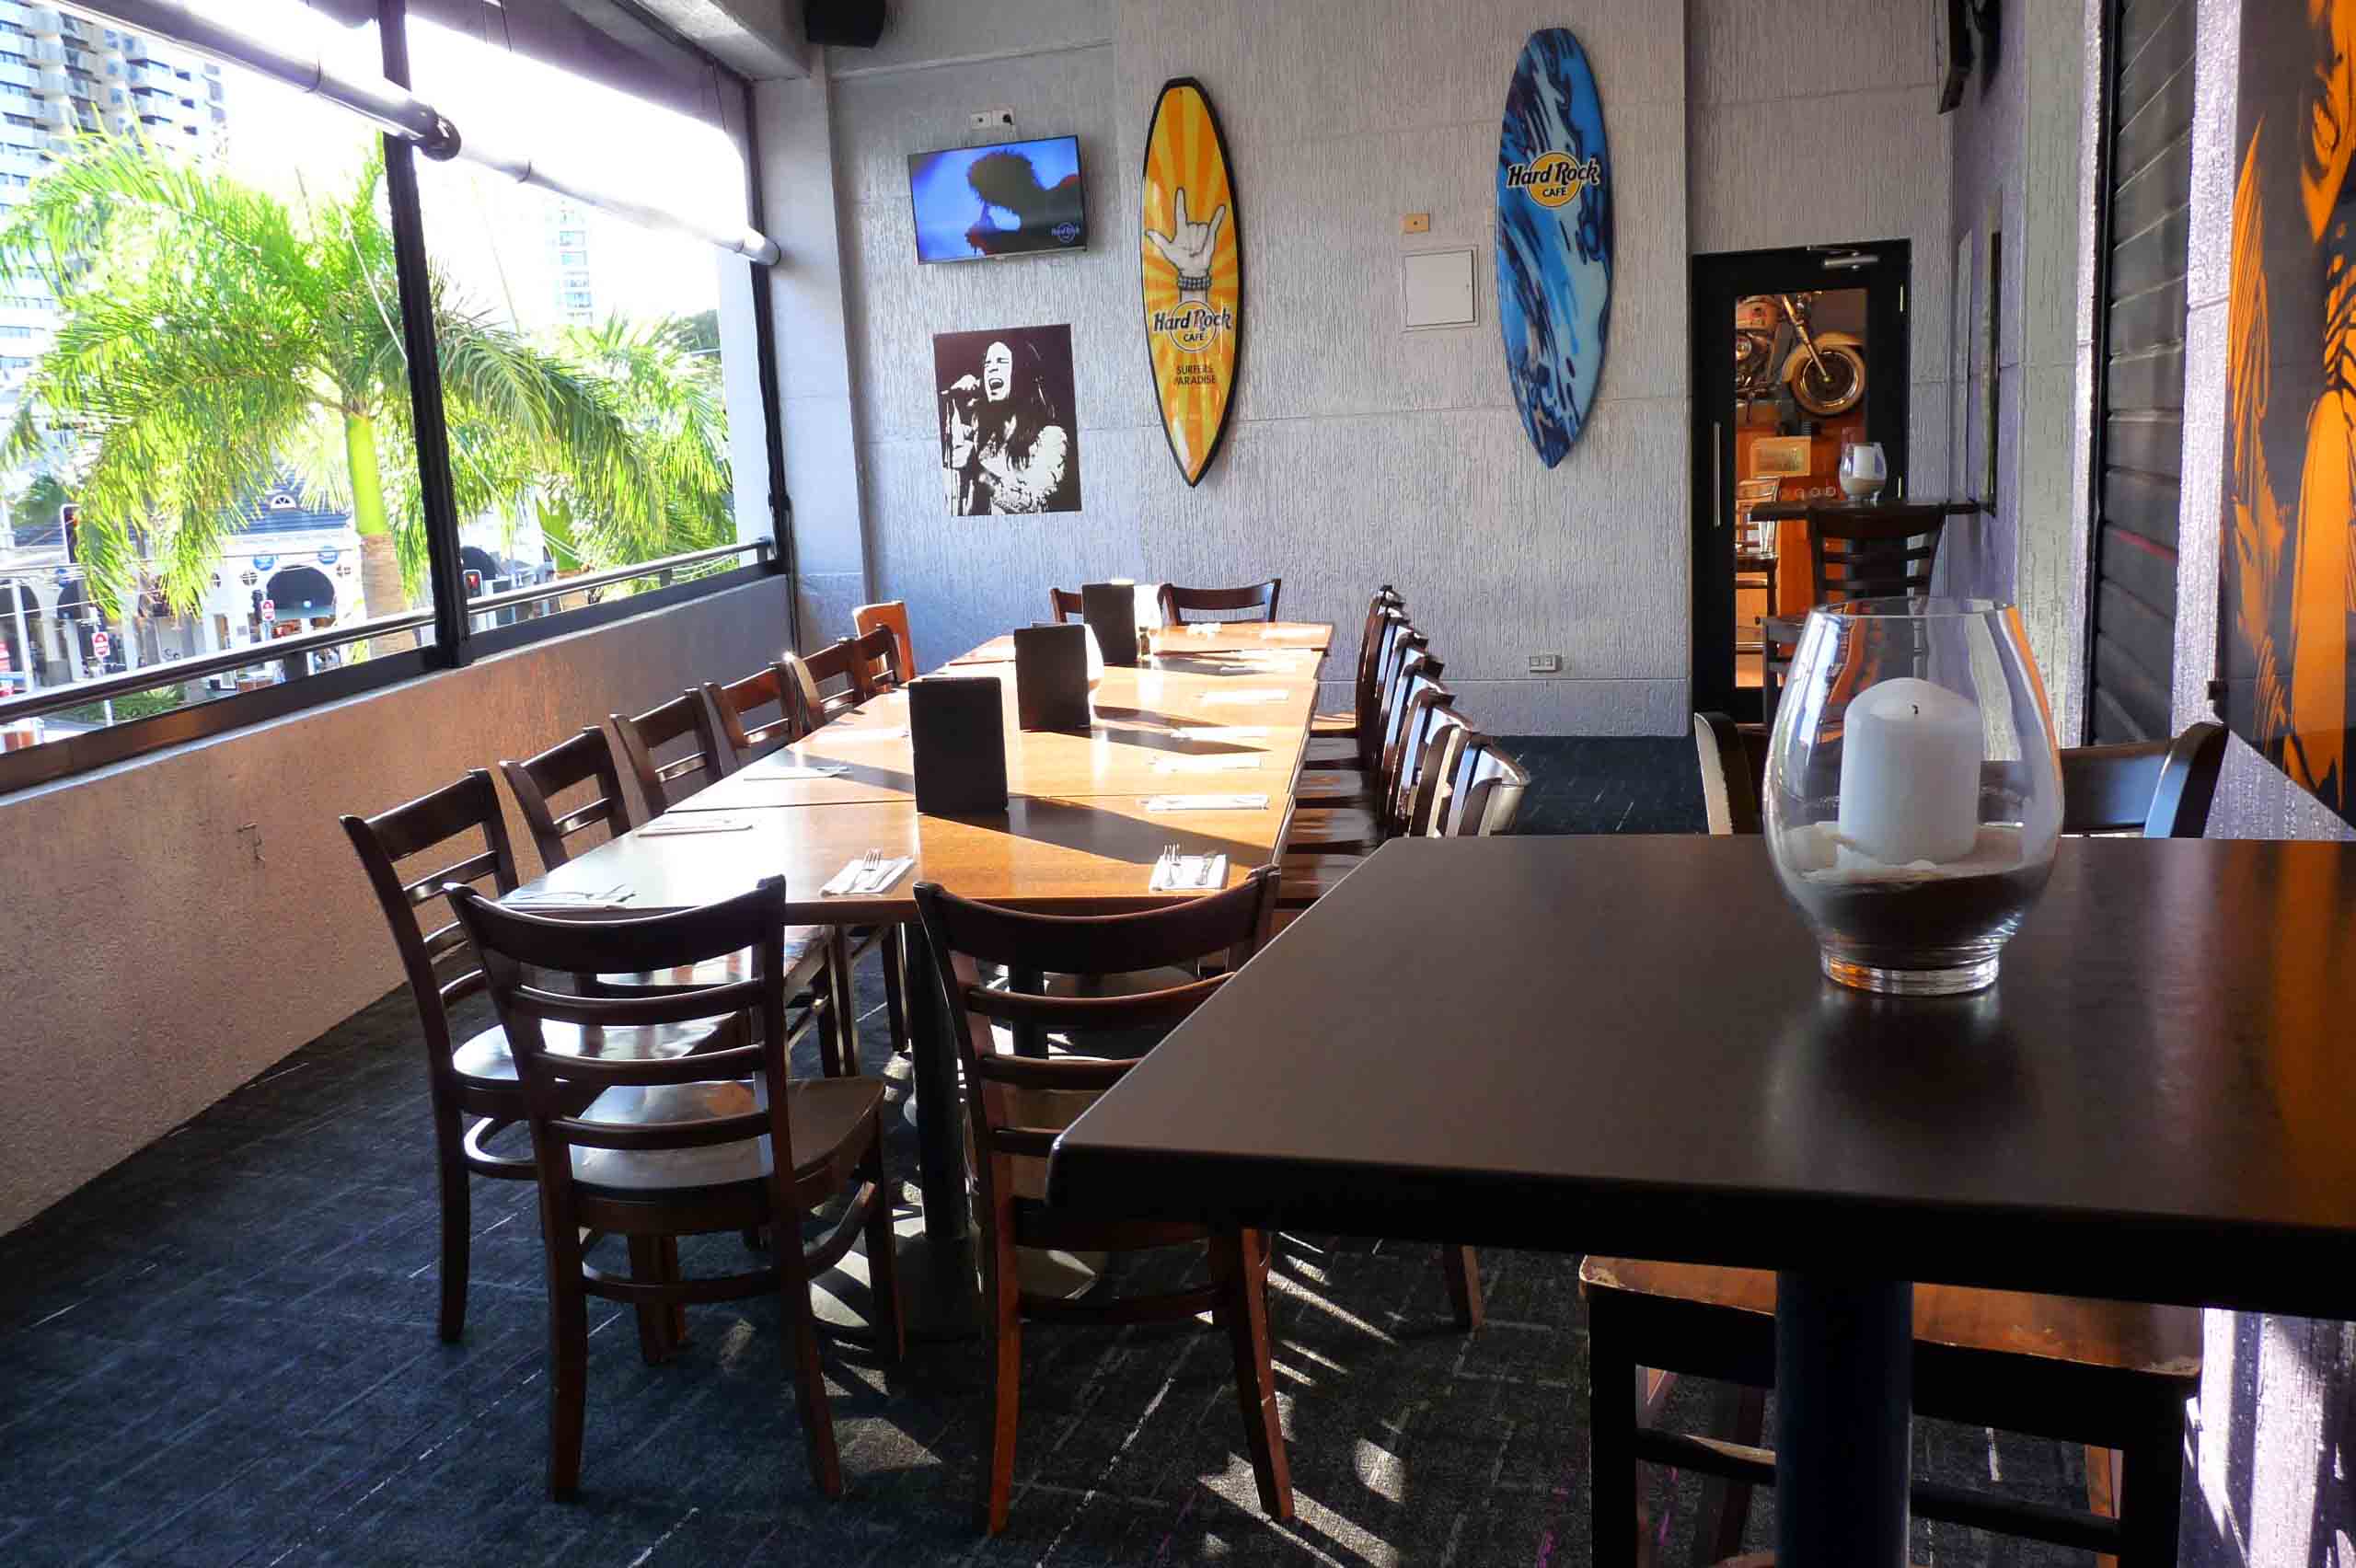 Hard Rock Café Surfers Paradise <br/> Venue Hire